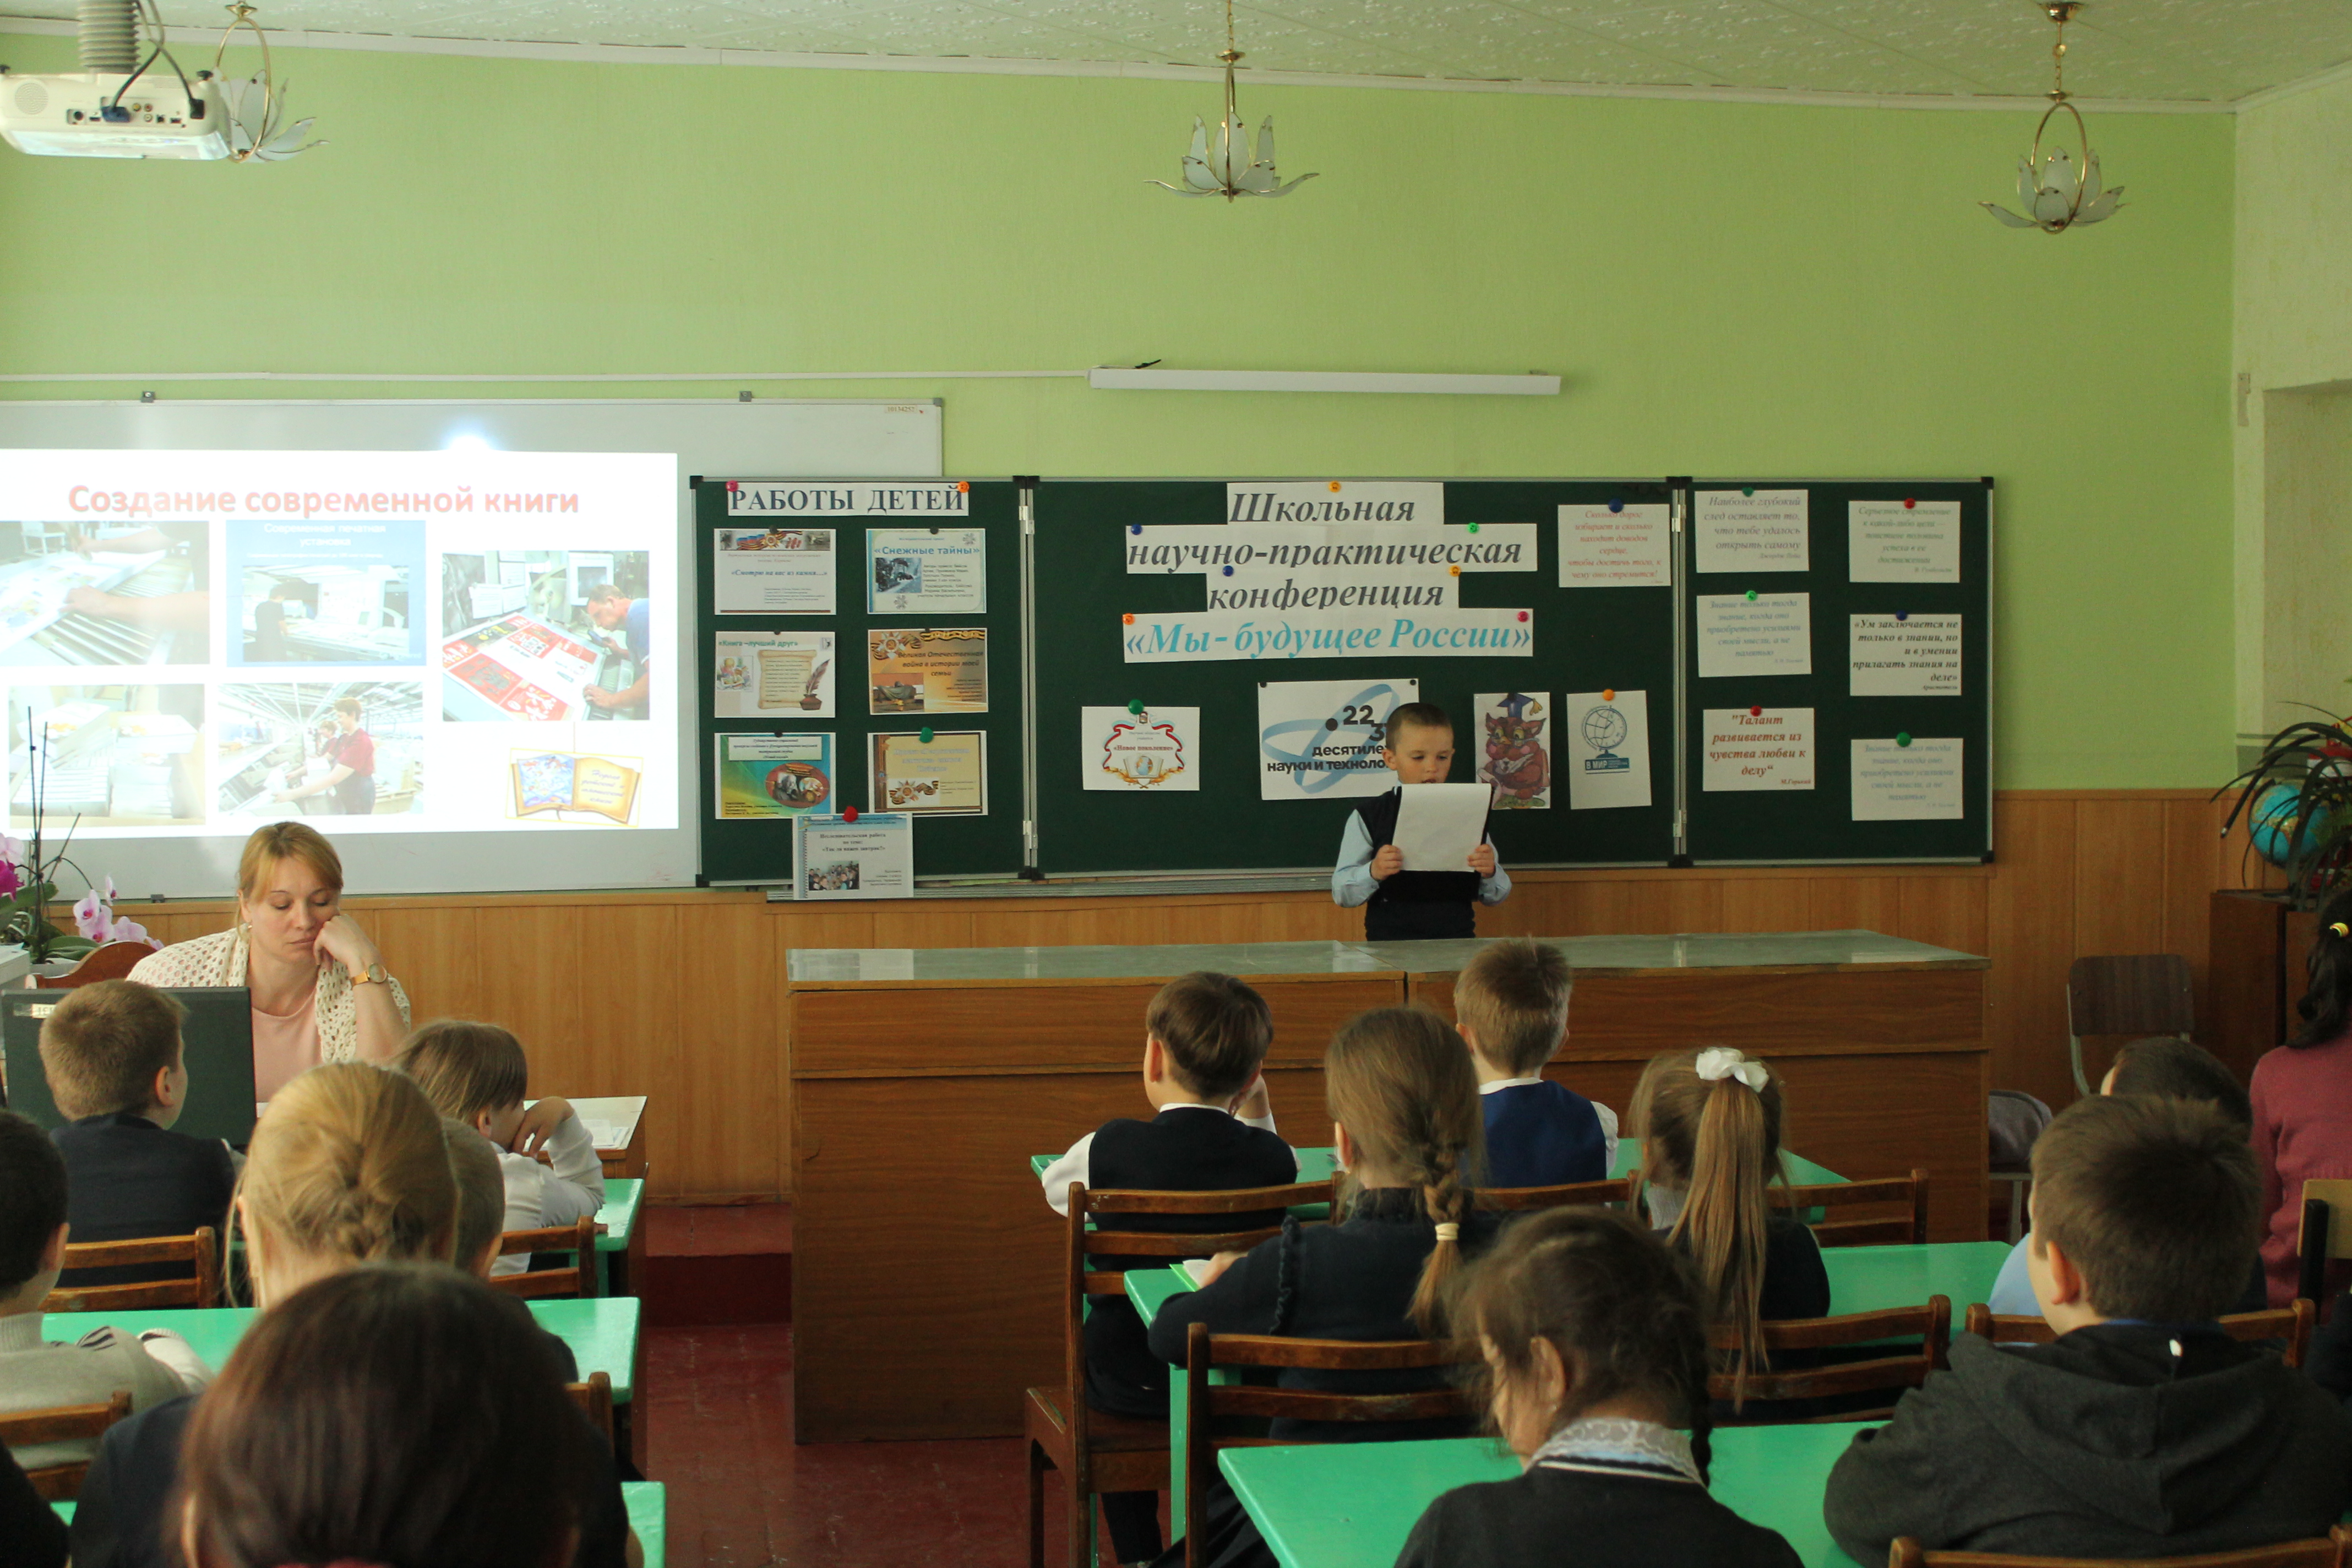 Школьная научно-практическая конференция «Мы - будущее России».